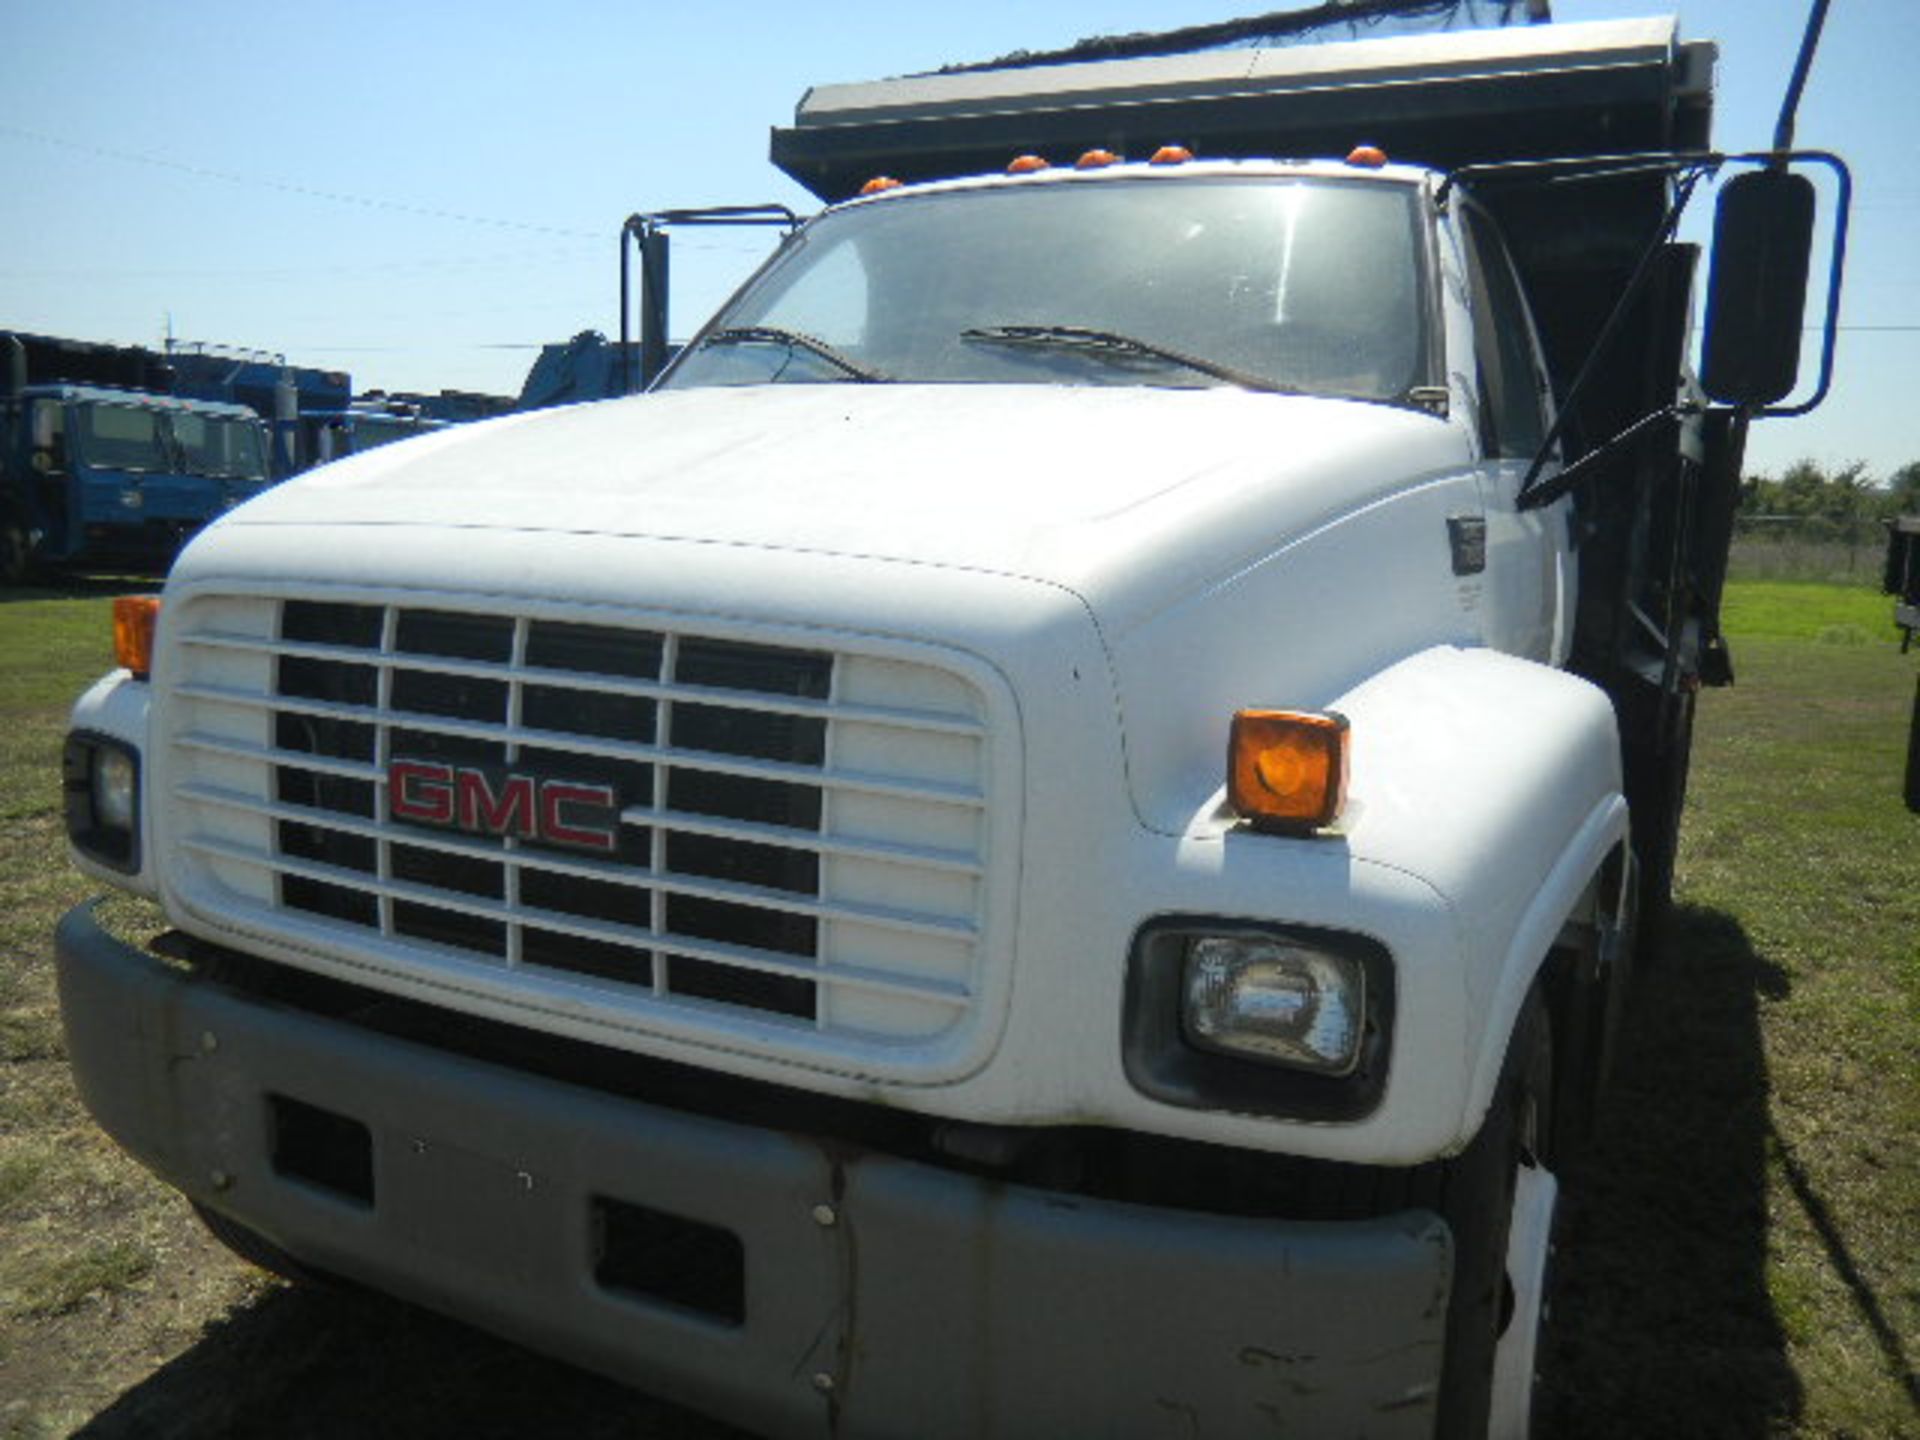 2000 GMC C7500 White 2 Ton Dump Truck - Asset I.D. #779 - Last of Vin (J503553) - Image 2 of 8